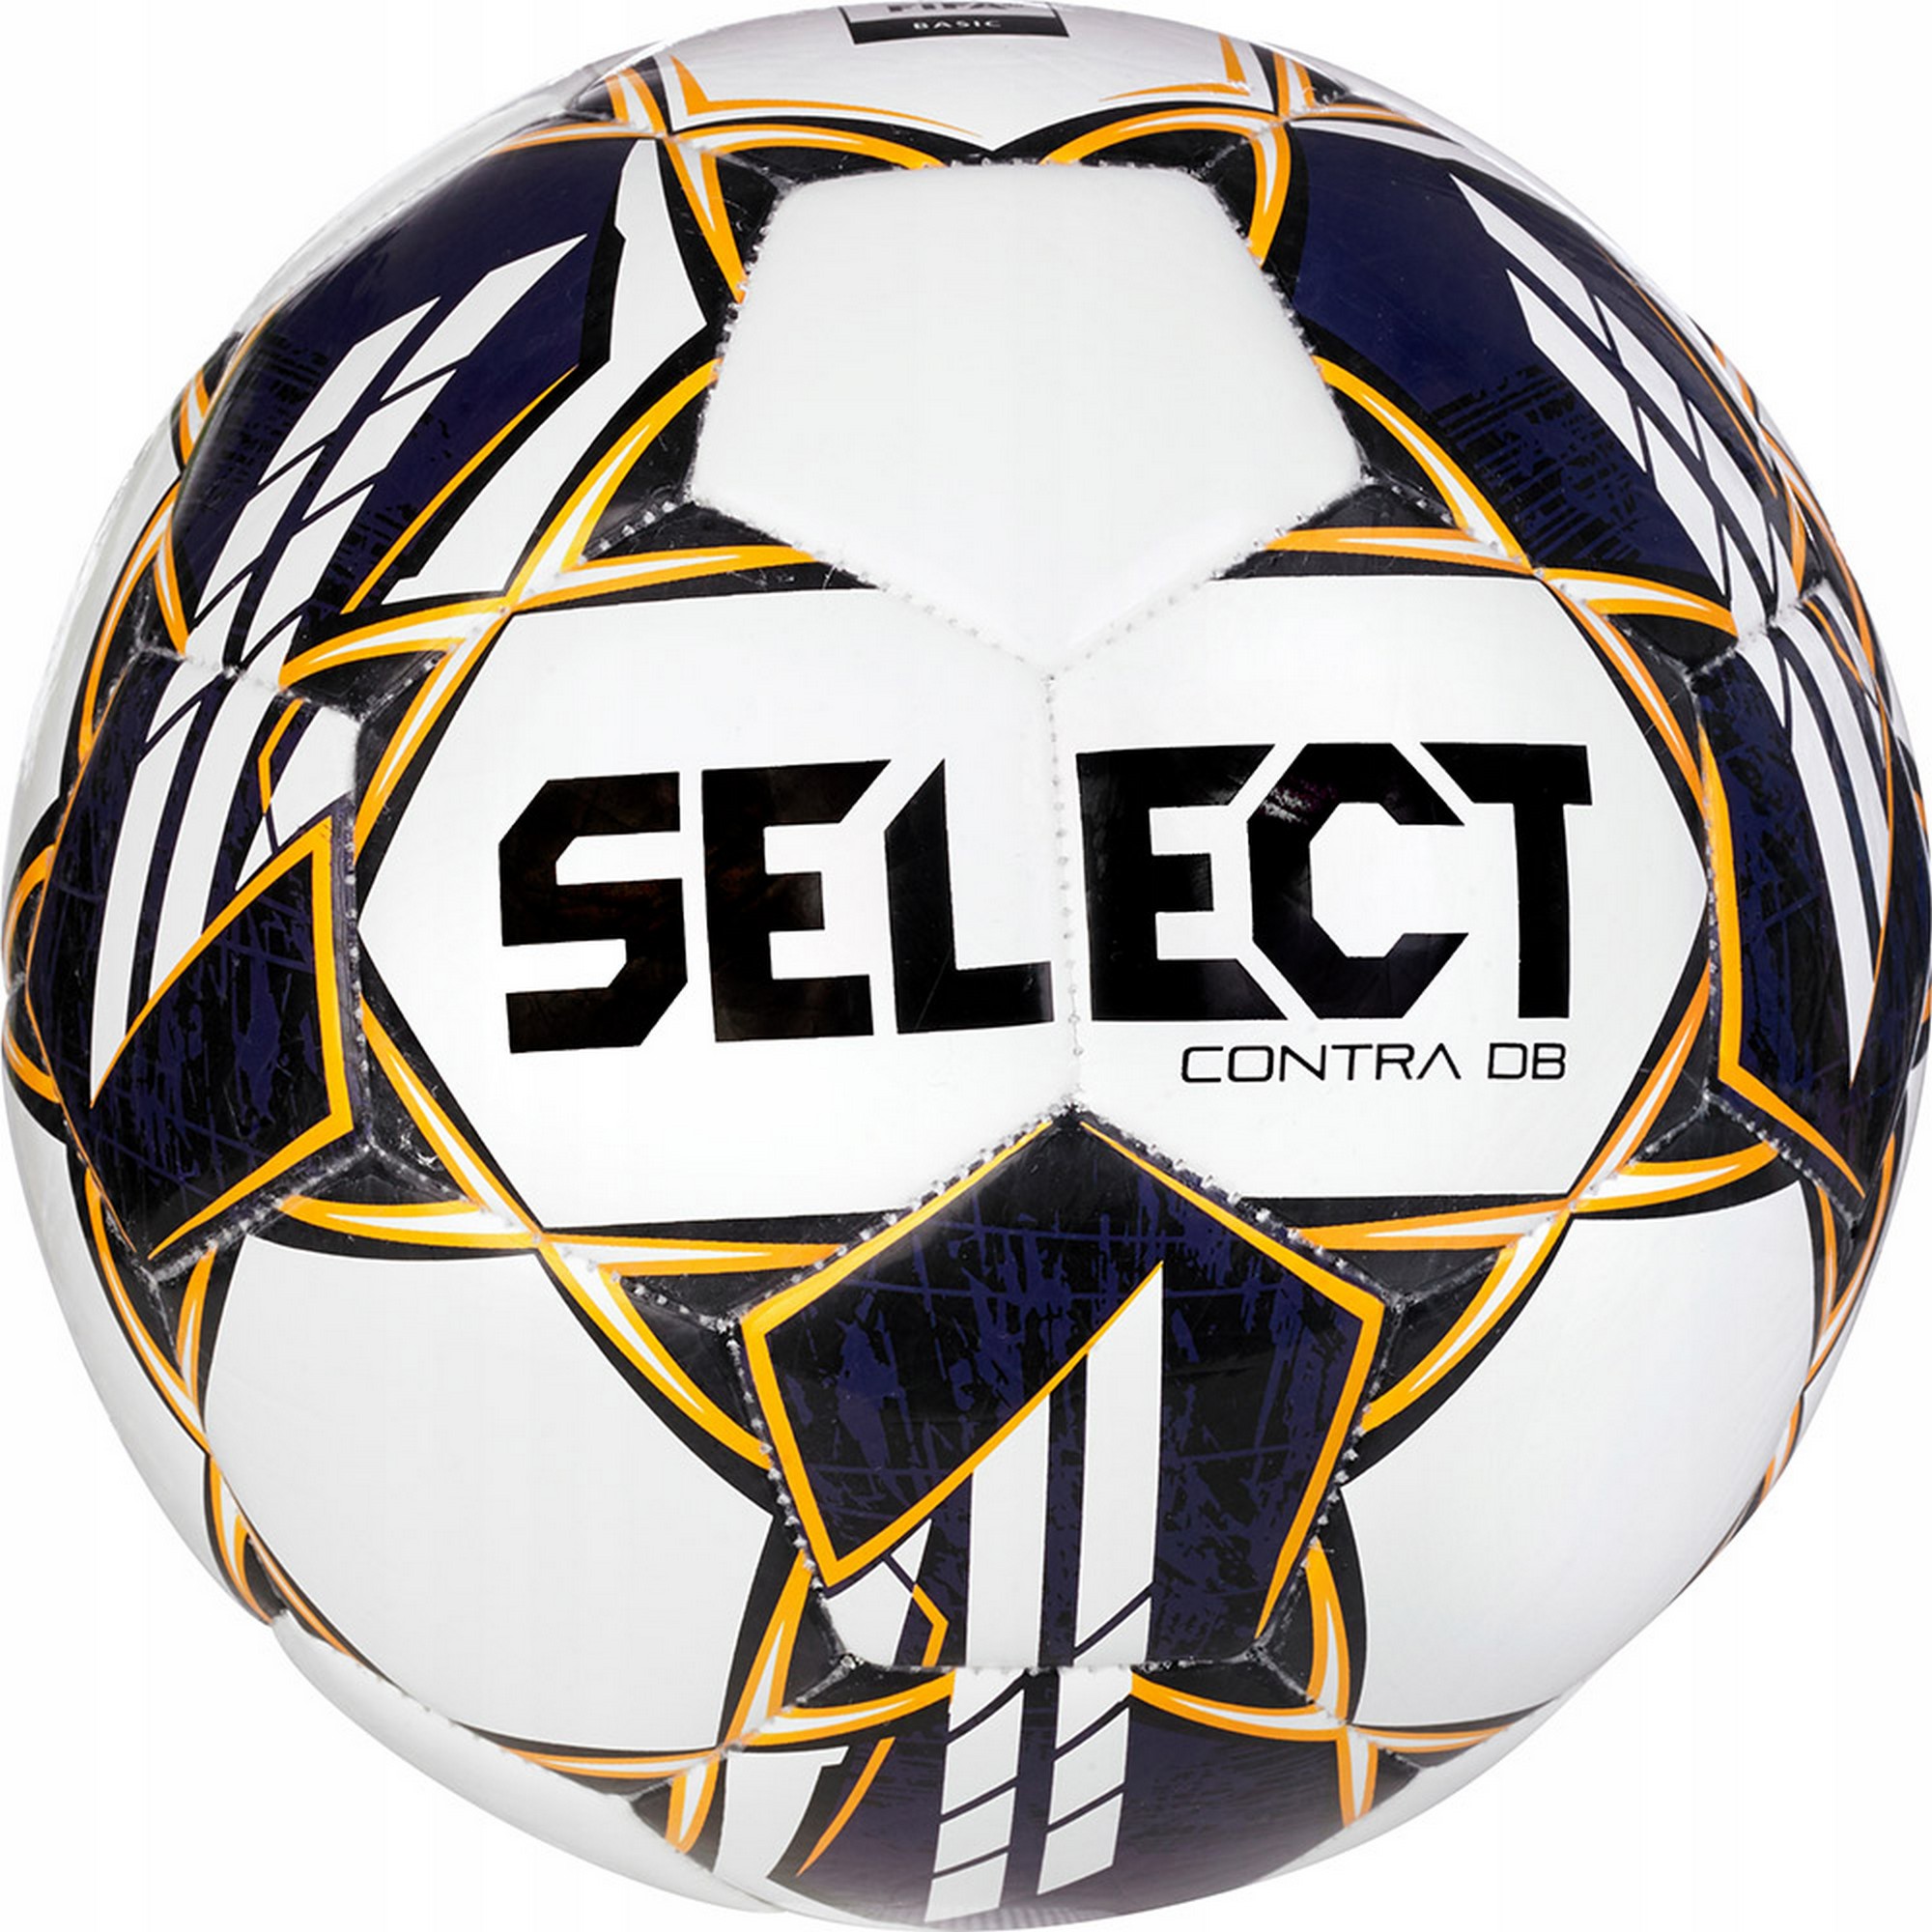   Select Contra Basic v23, FIFA Basic 0855160600 .5